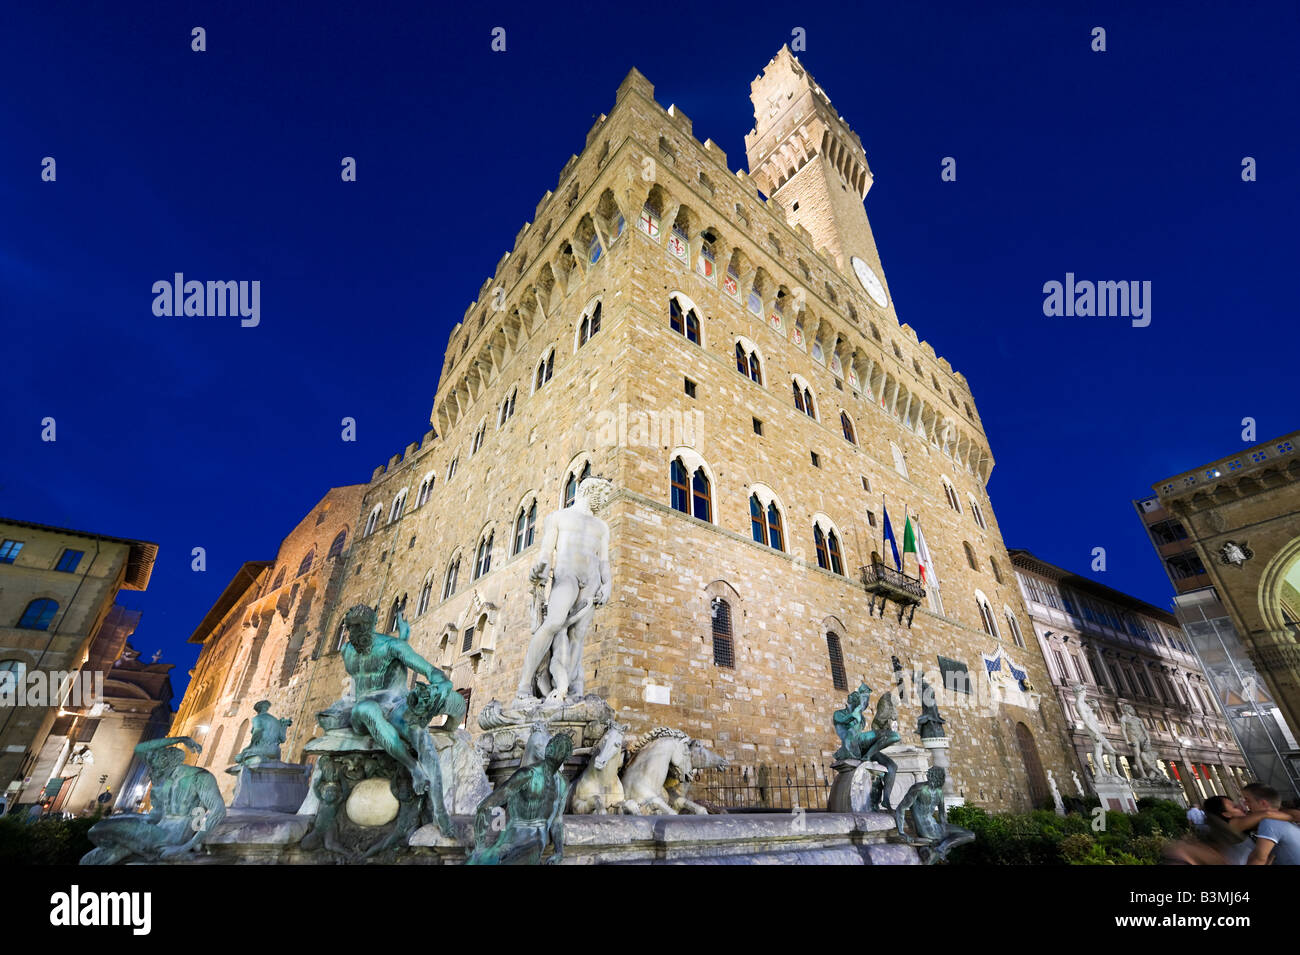 Palazzo Vecchio e Fontana di Nettuno a notte, Piazza della Signoria, Firenze, Toscana, Italia Foto Stock